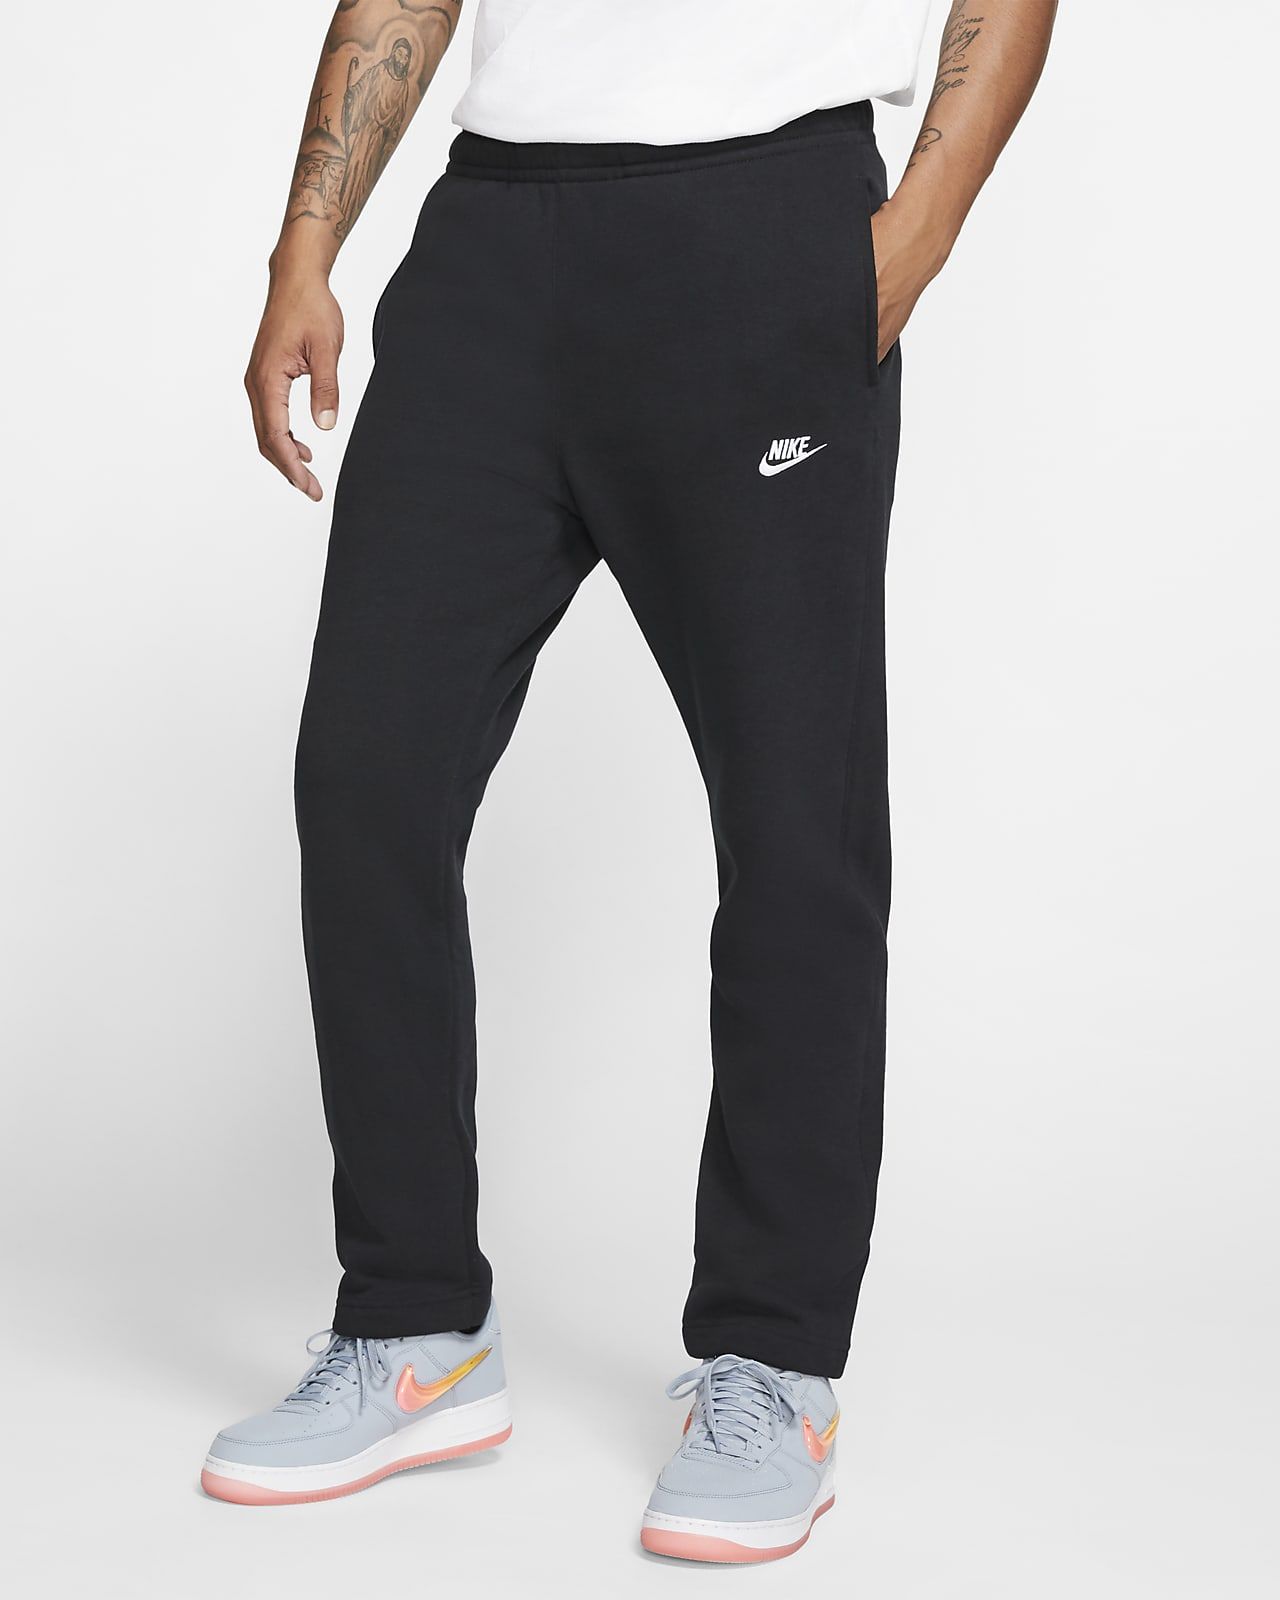 Nike Sportswear Club Fleece Men's Pants. Nike.com | Nike (US)